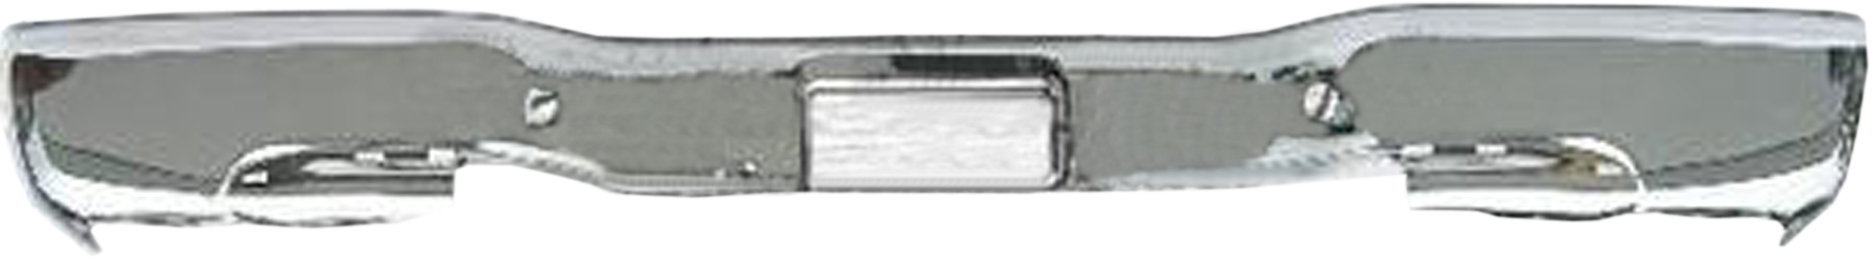 Aftermarket METAL REAR BUMPERS for CHEVROLET - SILVERADO 2500, SILVERADO 2500,99-04,Rear bumper face bar